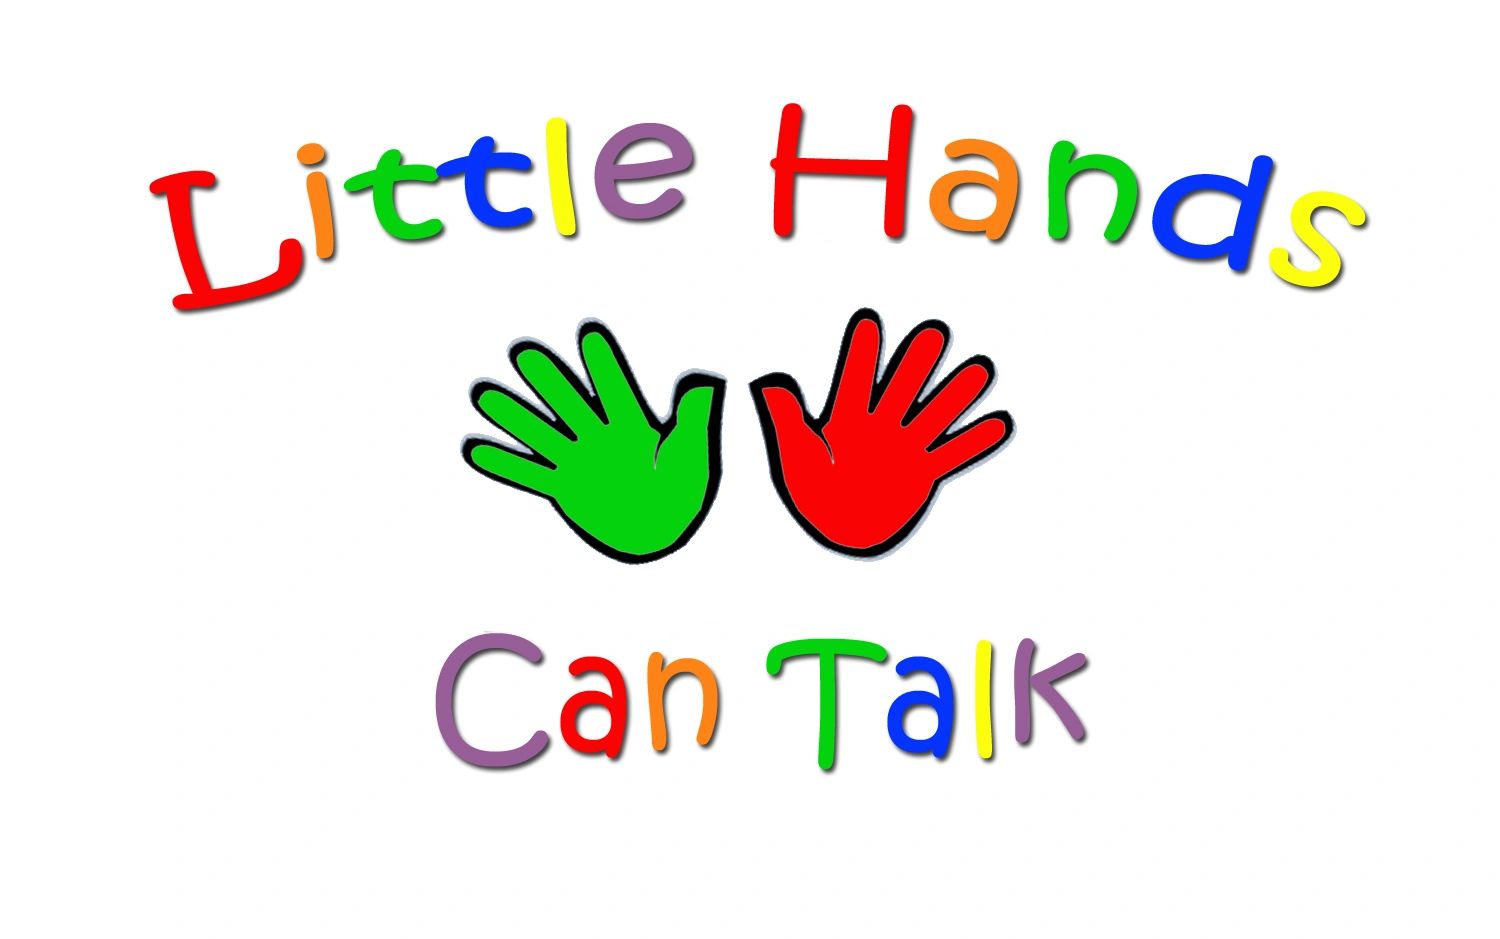 Little Hands Can